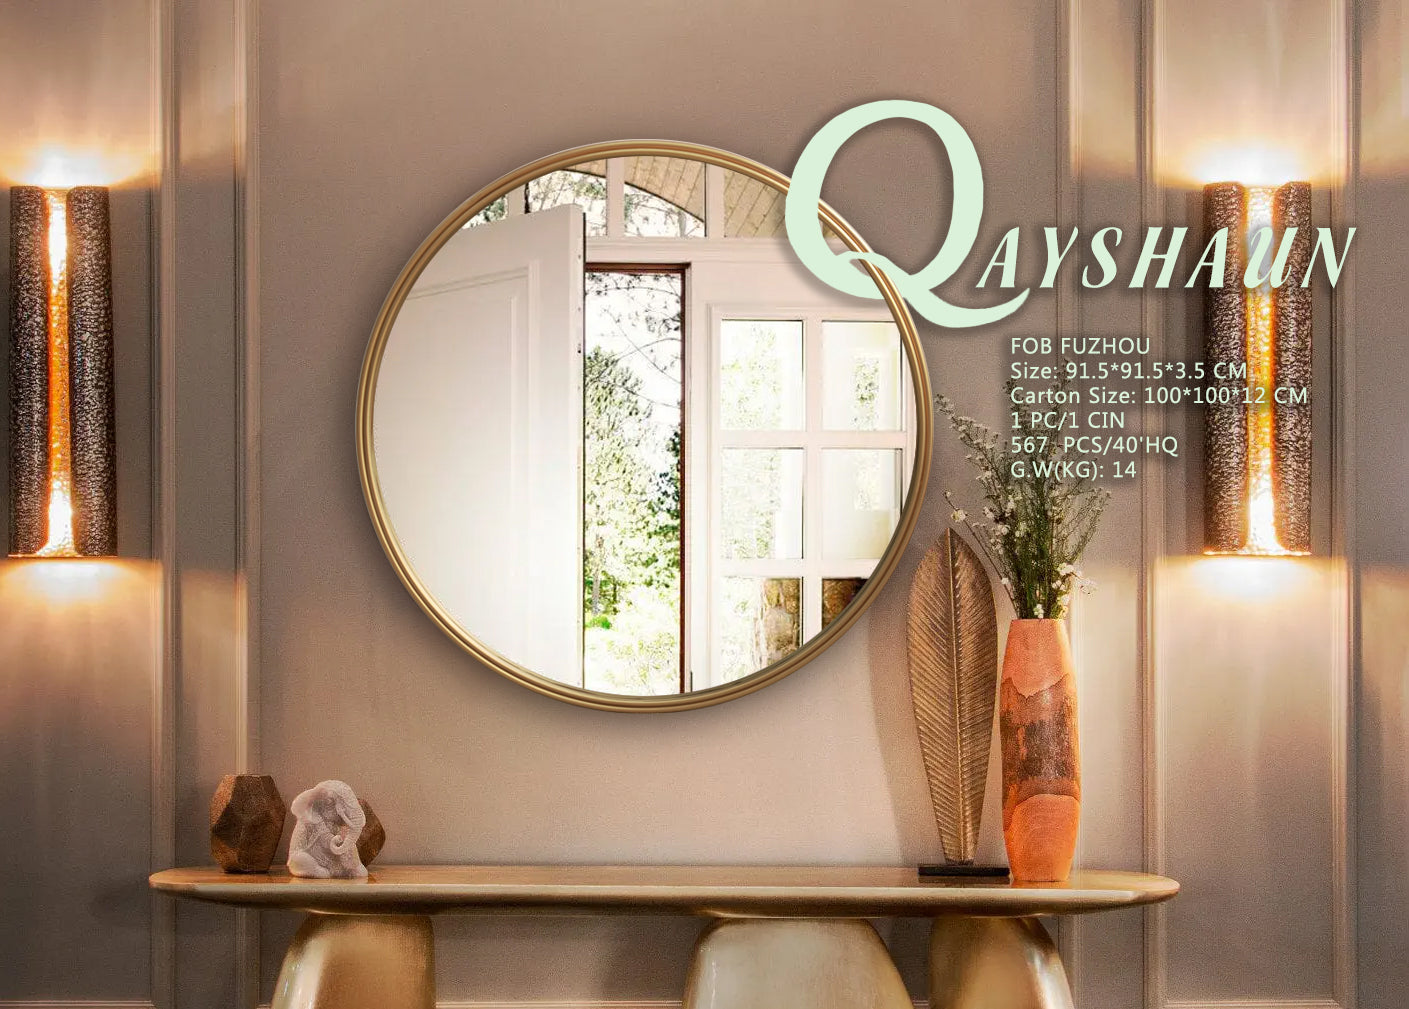 Qayshaun Mirror